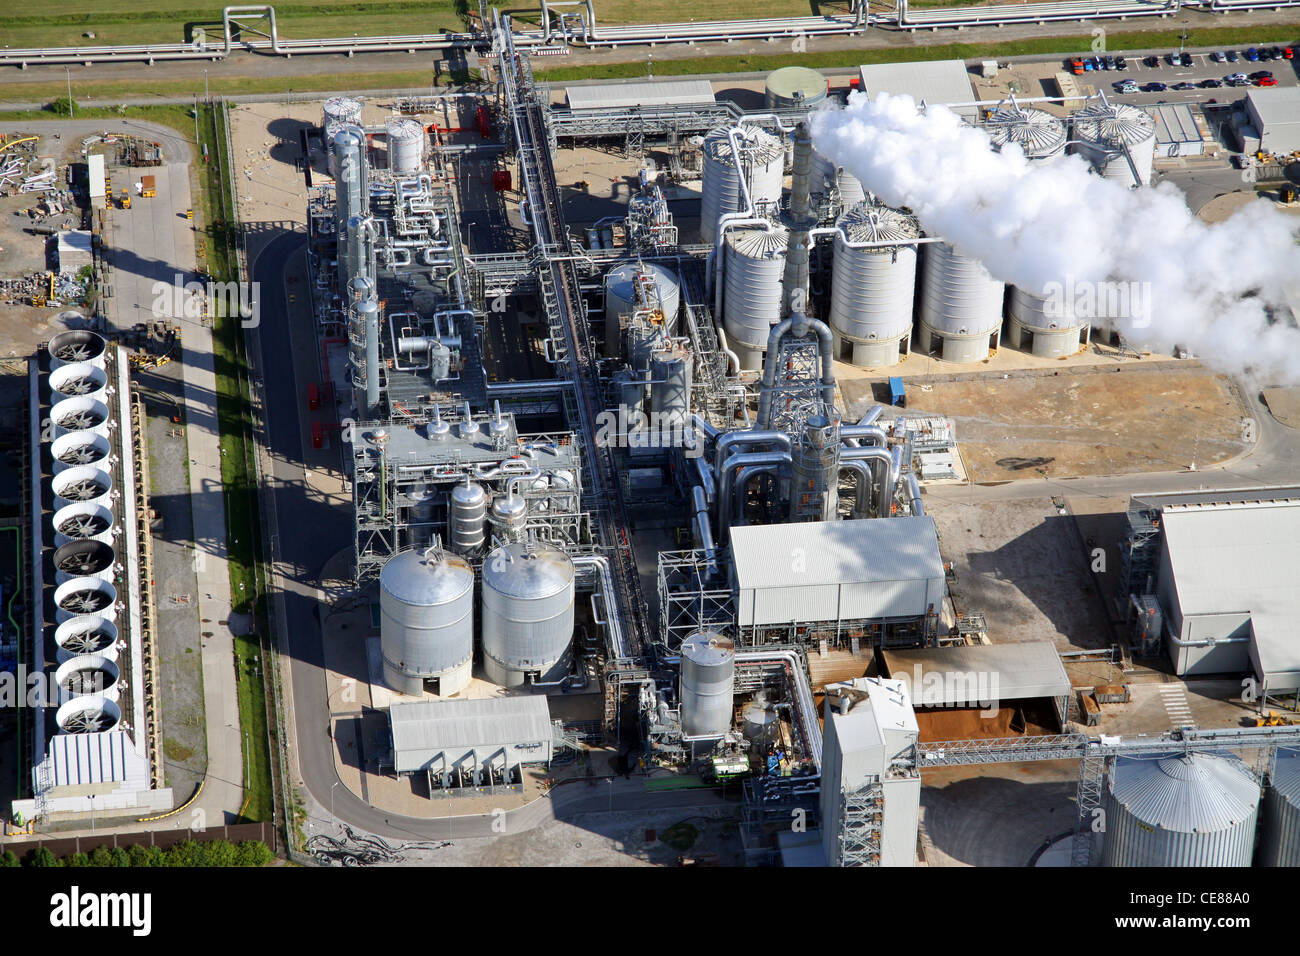 Fotografía aérea de las obras químicas de Ensus UK en Wilton, Teesside tomada en 2011 Foto de stock